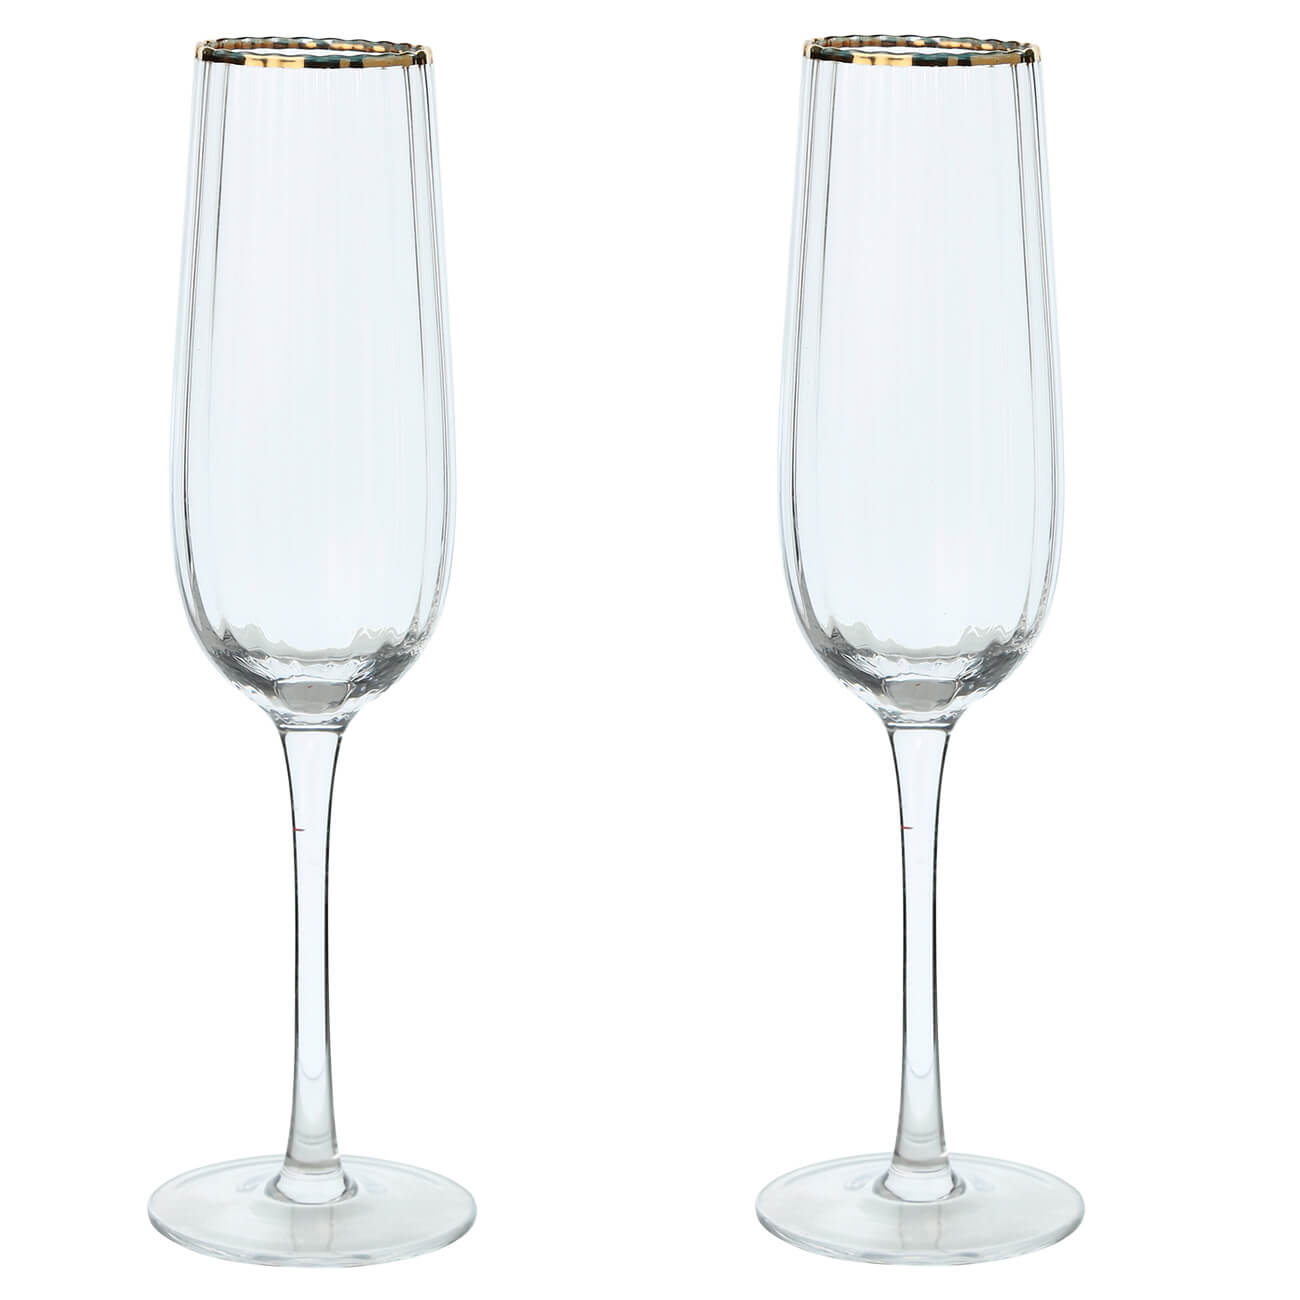 Бокал для шампанского, 275 мл, 2 шт, стекло, с золотистым кантом, Lombardy R Gold бокал кубок для вина 320 мл стекло с золотистым кантом nautilus gold